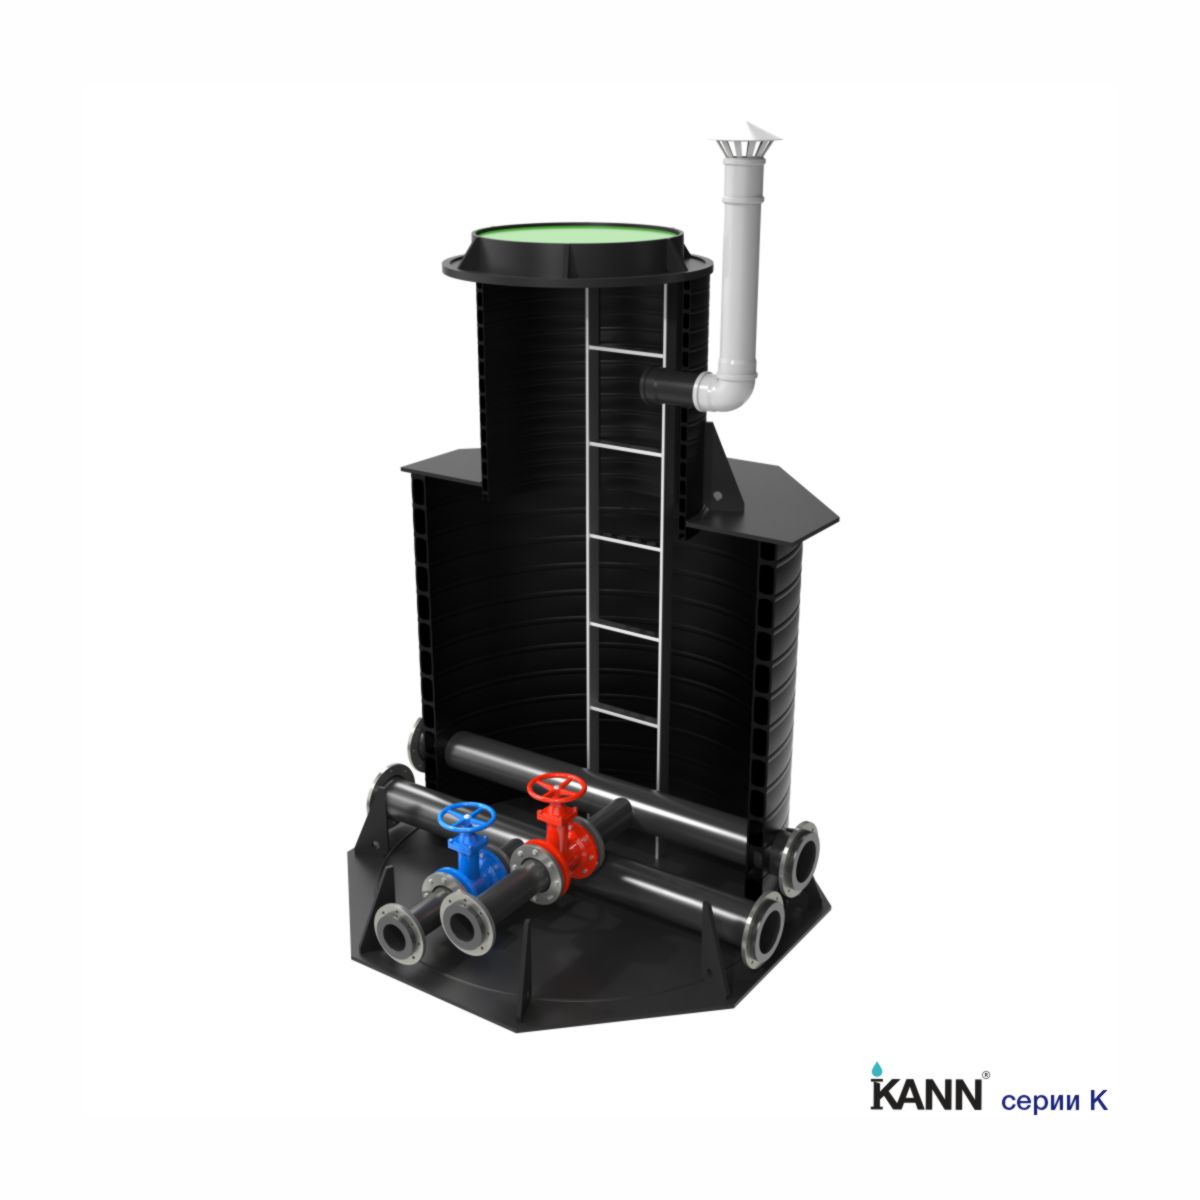 Колодец водоснабжения KANN серии K